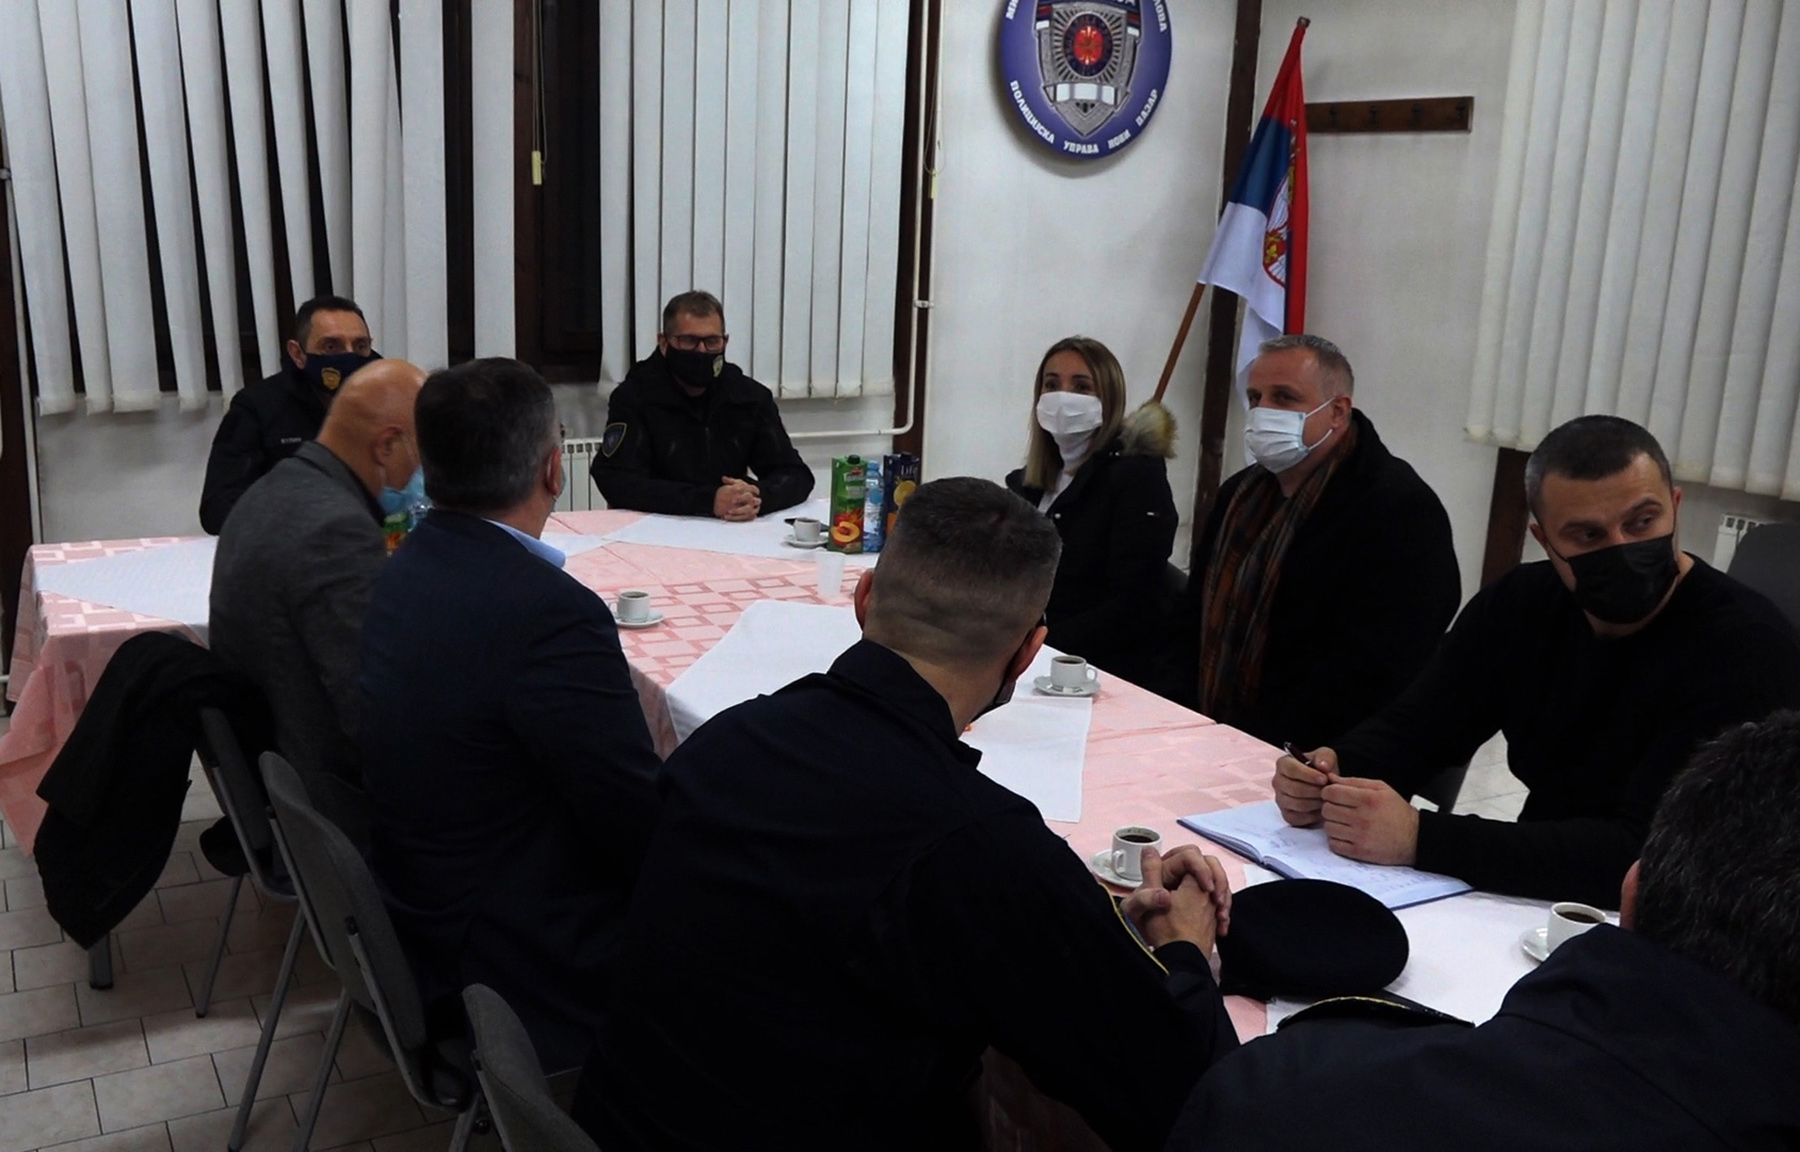 Ministar Vulin: Država neće dozvoliti obračune kriminalnih bandi u Novom Pazaru